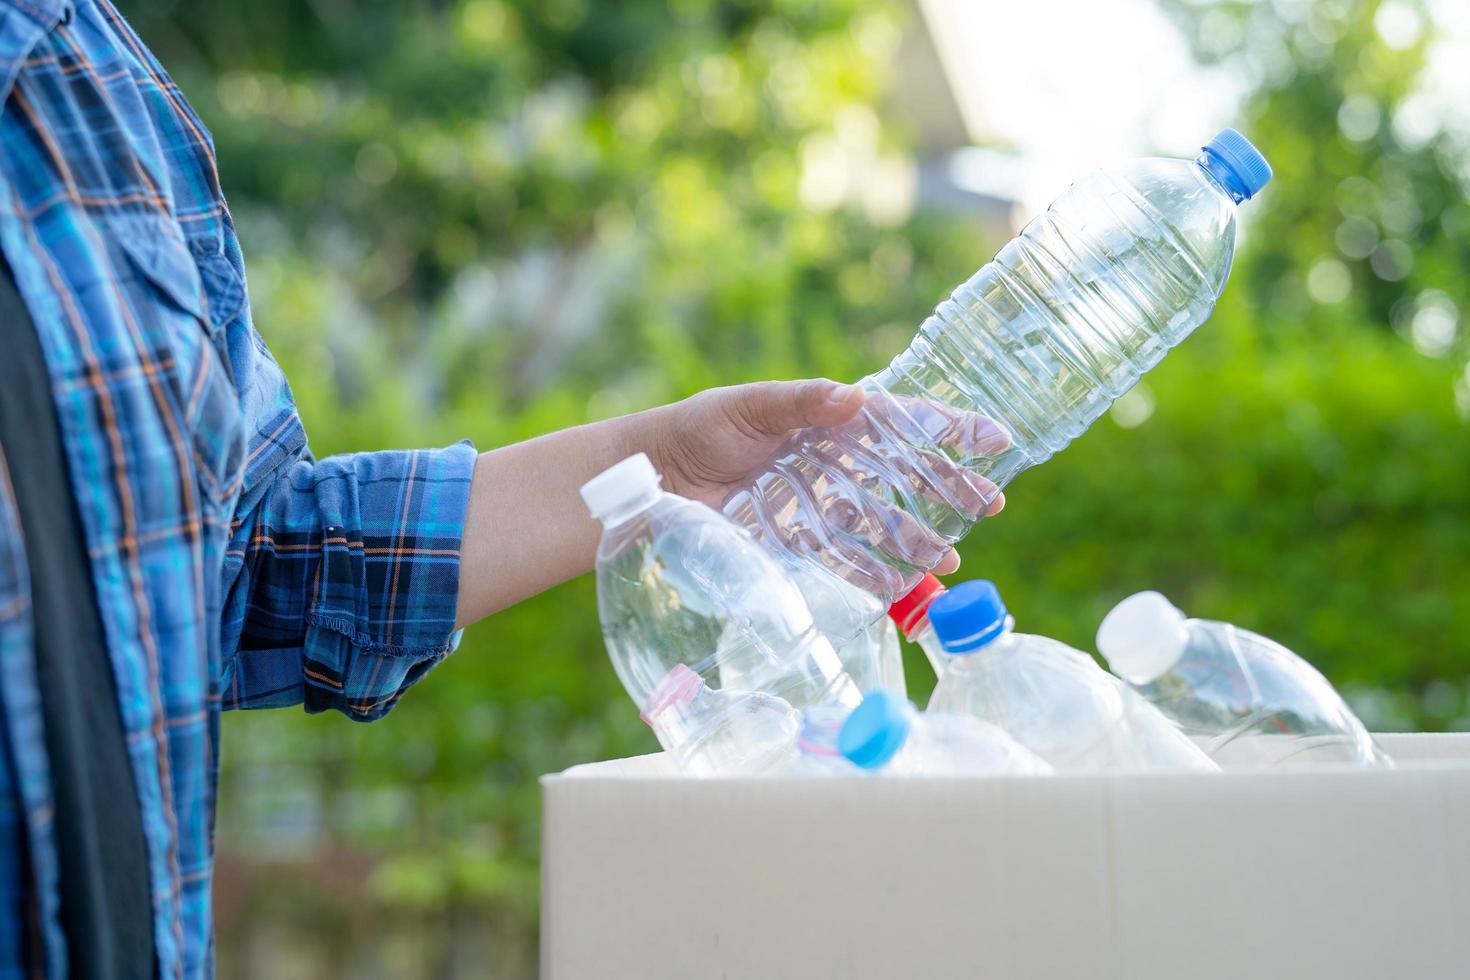 Voluntario de mujer asiática llevar botellas de plástico de agua a la basura de la caja de basura en el parque, reciclar el concepto de ecología ambiental de residuos foto